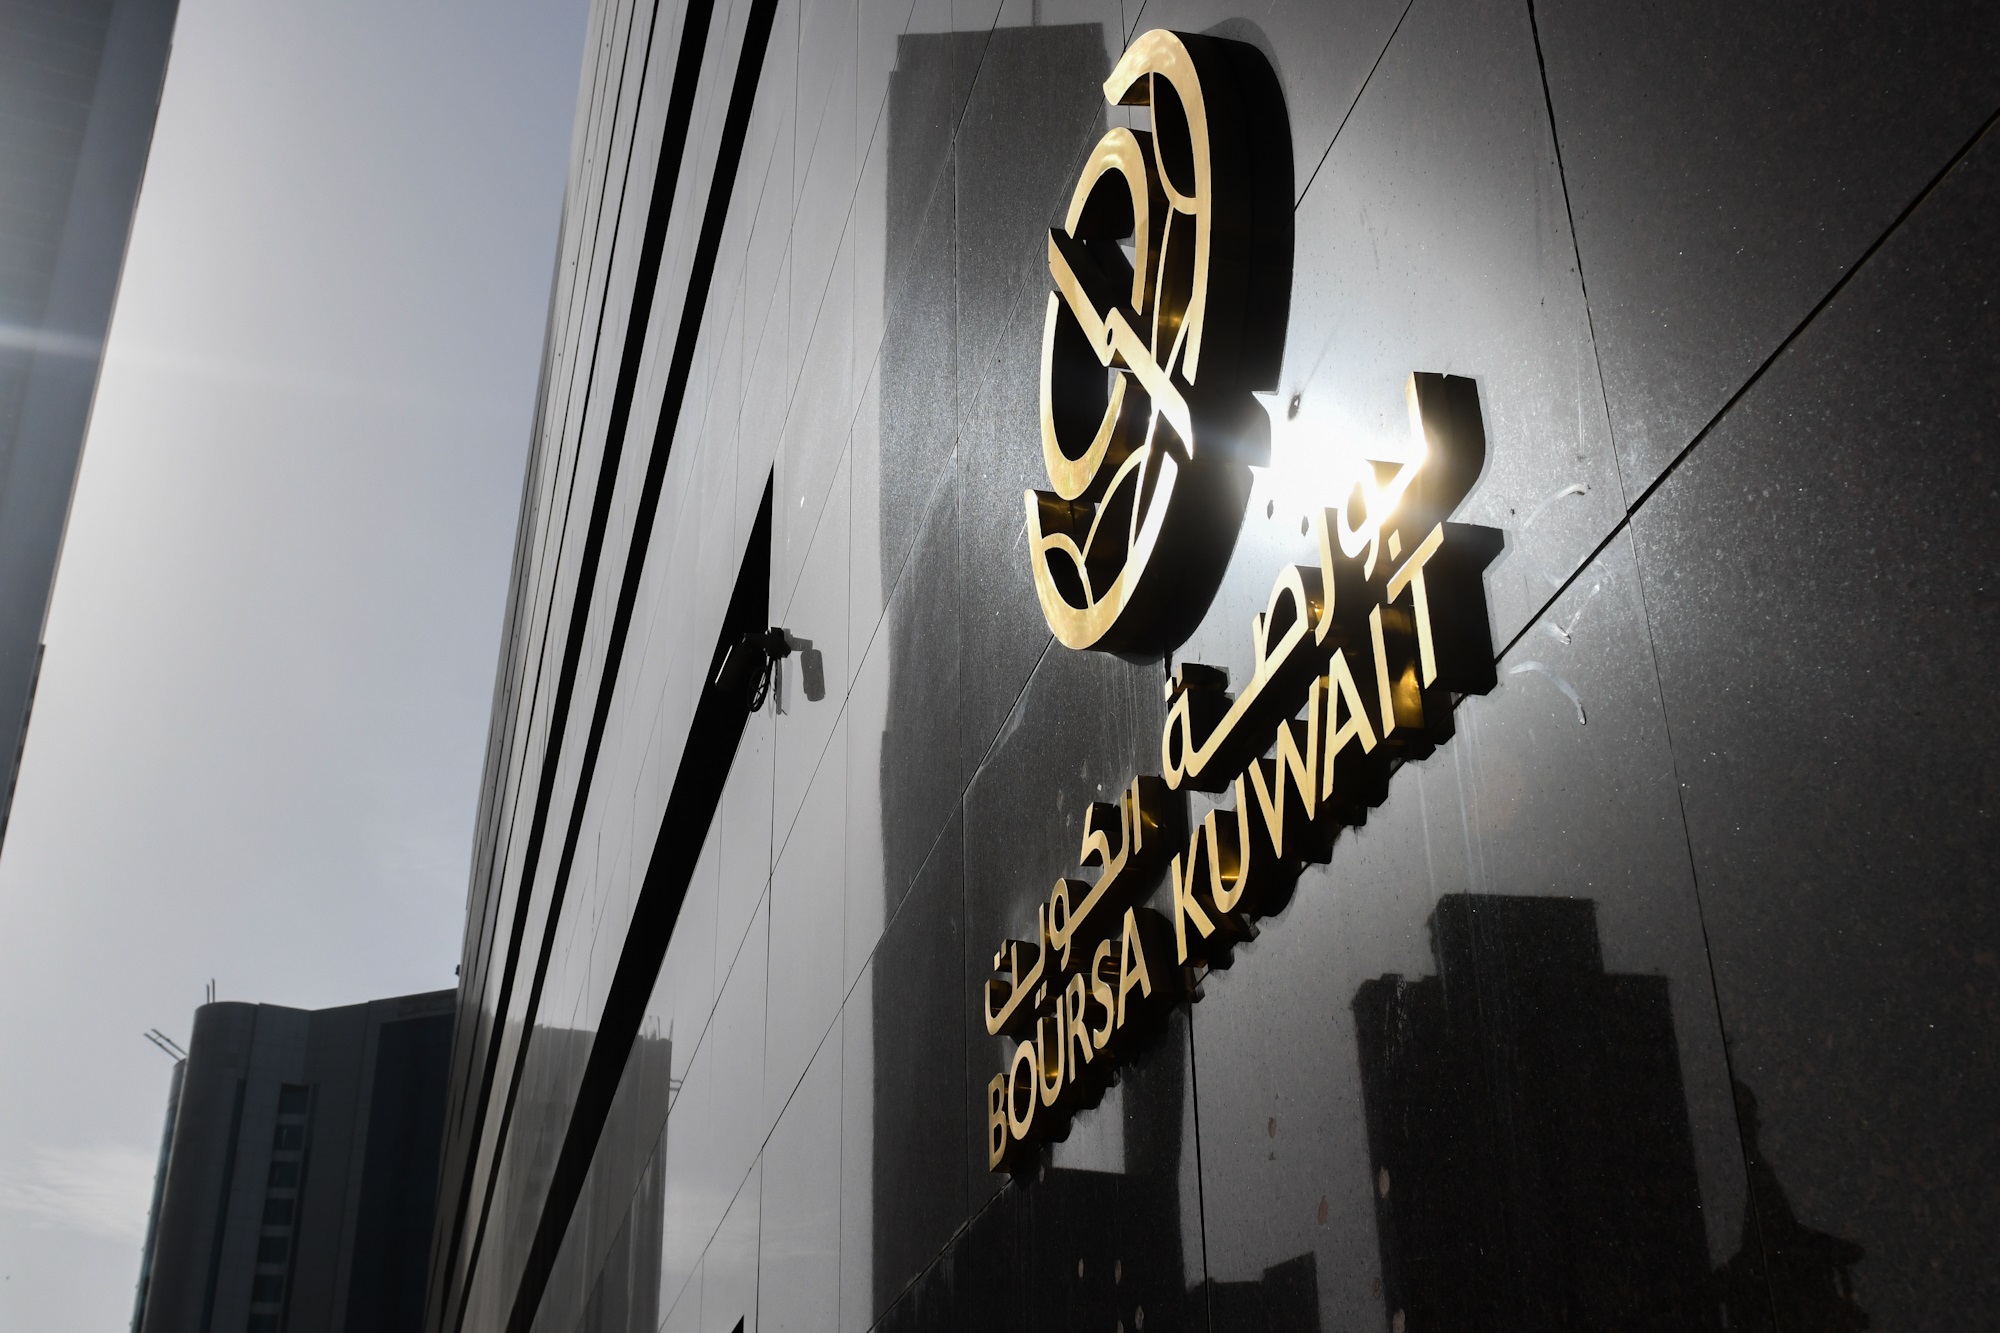 بورصة الكويت تغلق تعاملاتها على ارتفاع مؤشرها العام 04ر49 نقطة ليبلغ 48ر7475 بنسبة 66ر0 في المئة                                                                                                                                                          